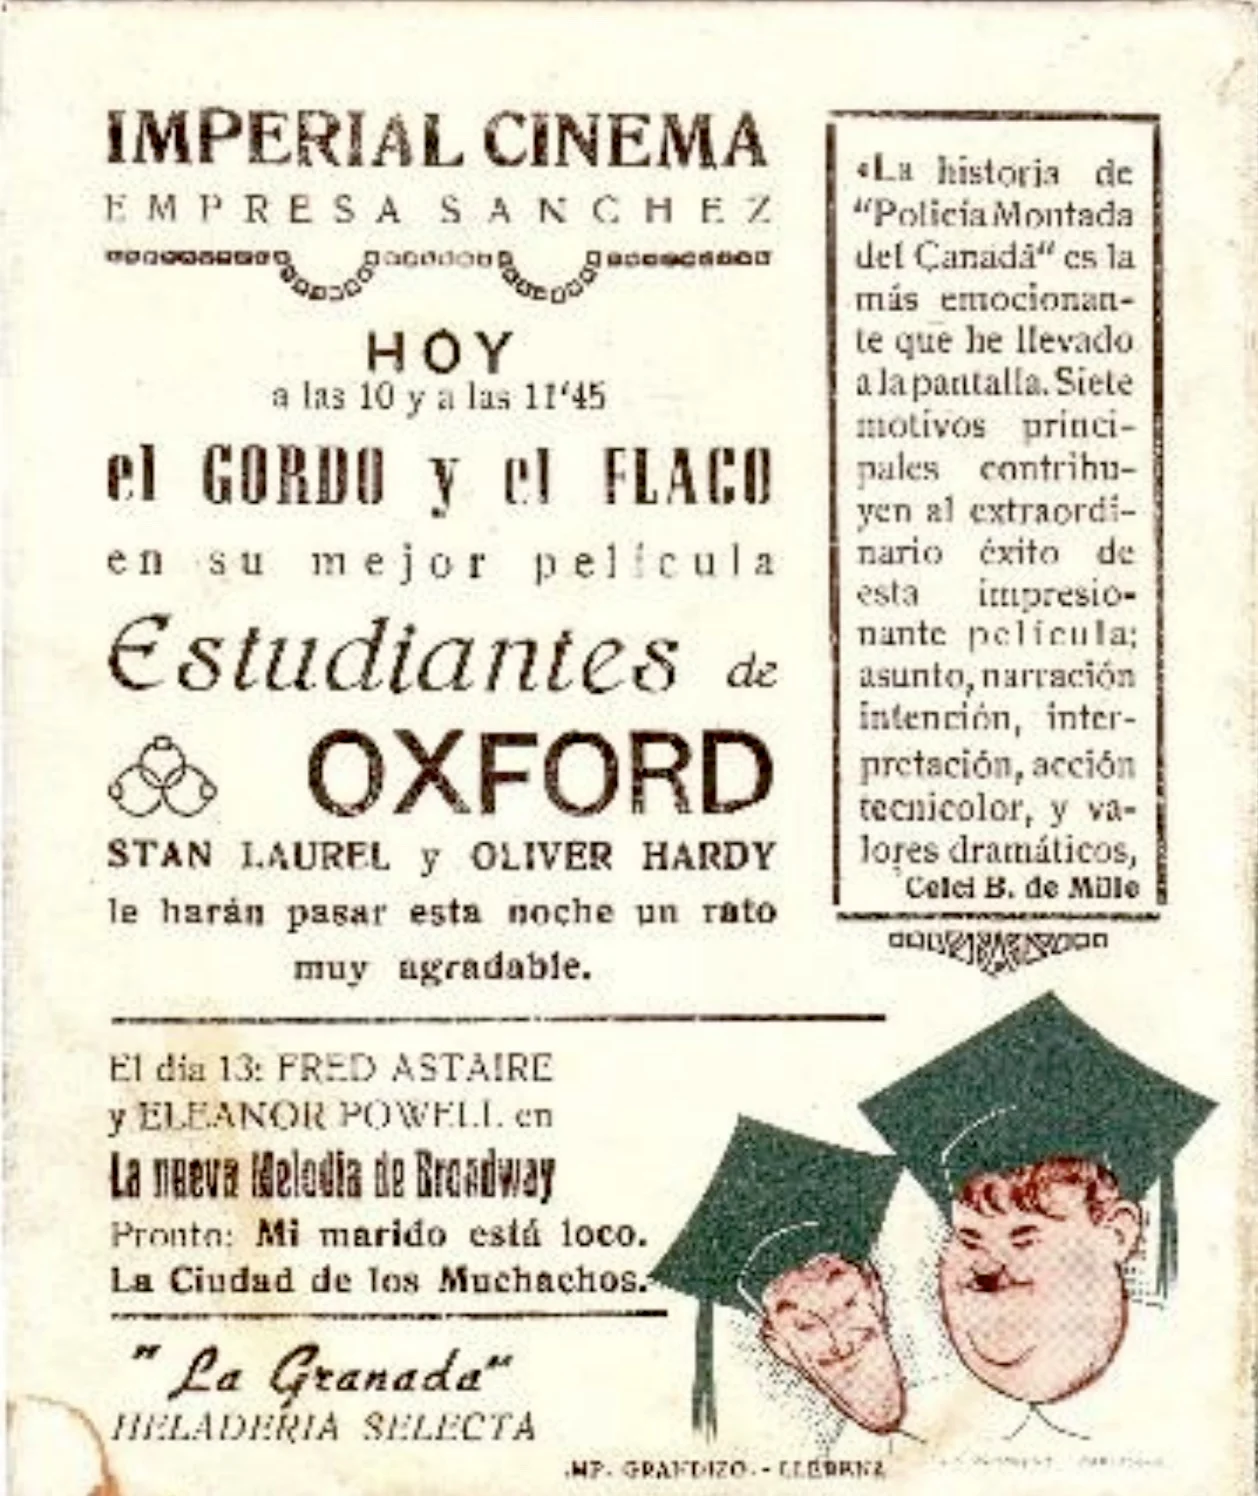 Carte de cine Imperial en Llerena - 1940